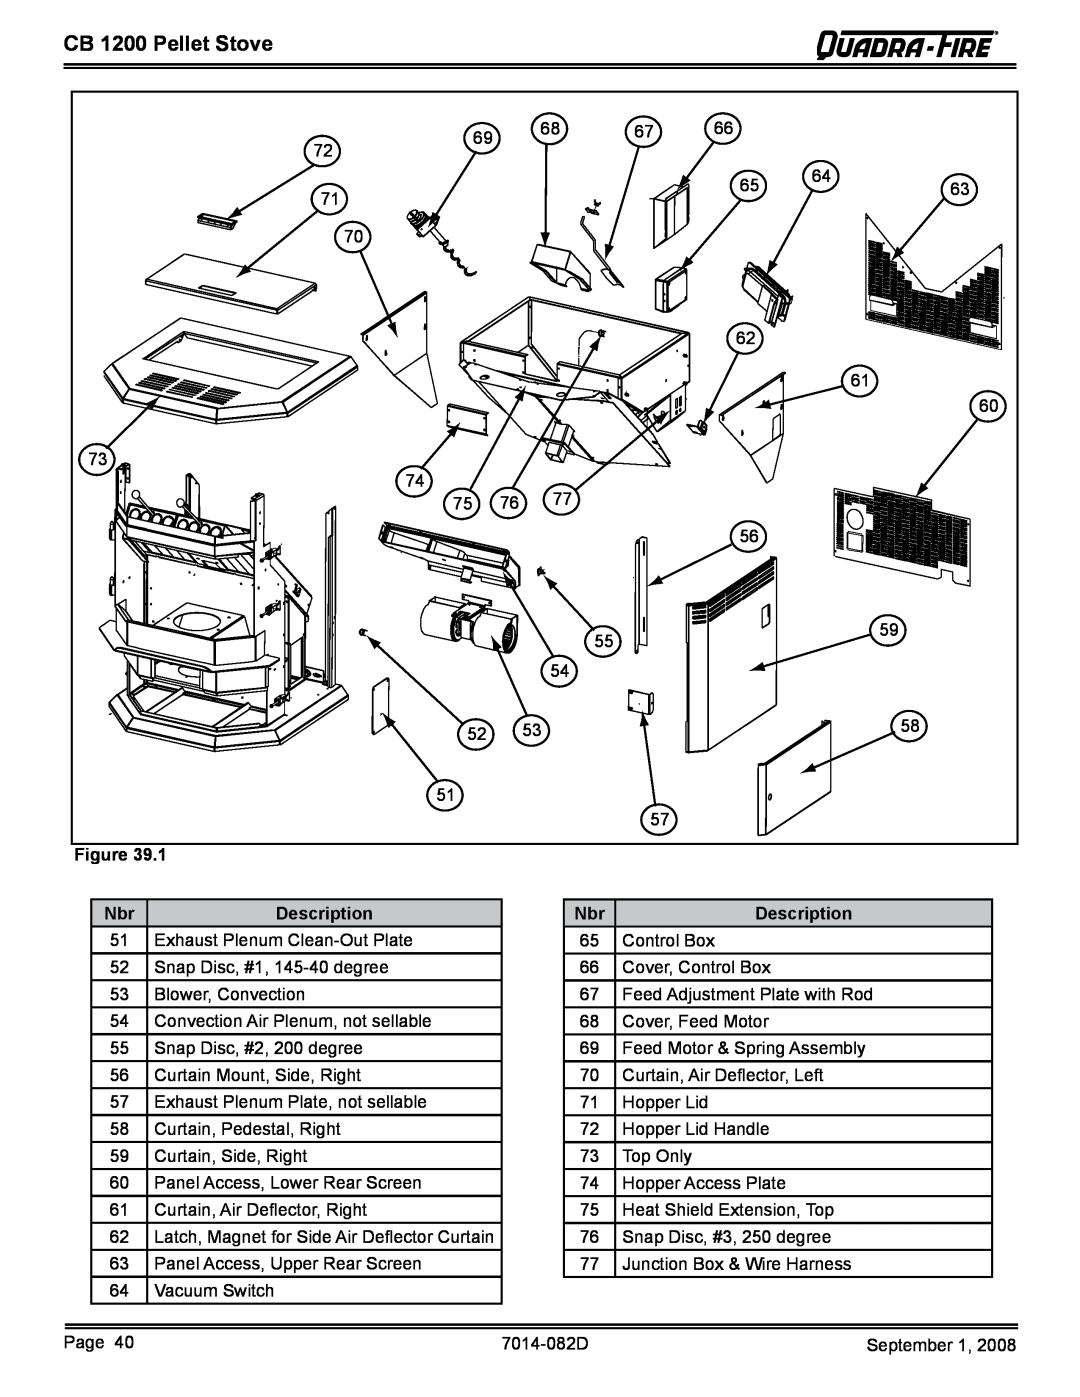 Quadra-Fire CB1200-B owner manual CB 1200 Pellet Stove, Description, Exhaust Plenum Clean-OutPlate 